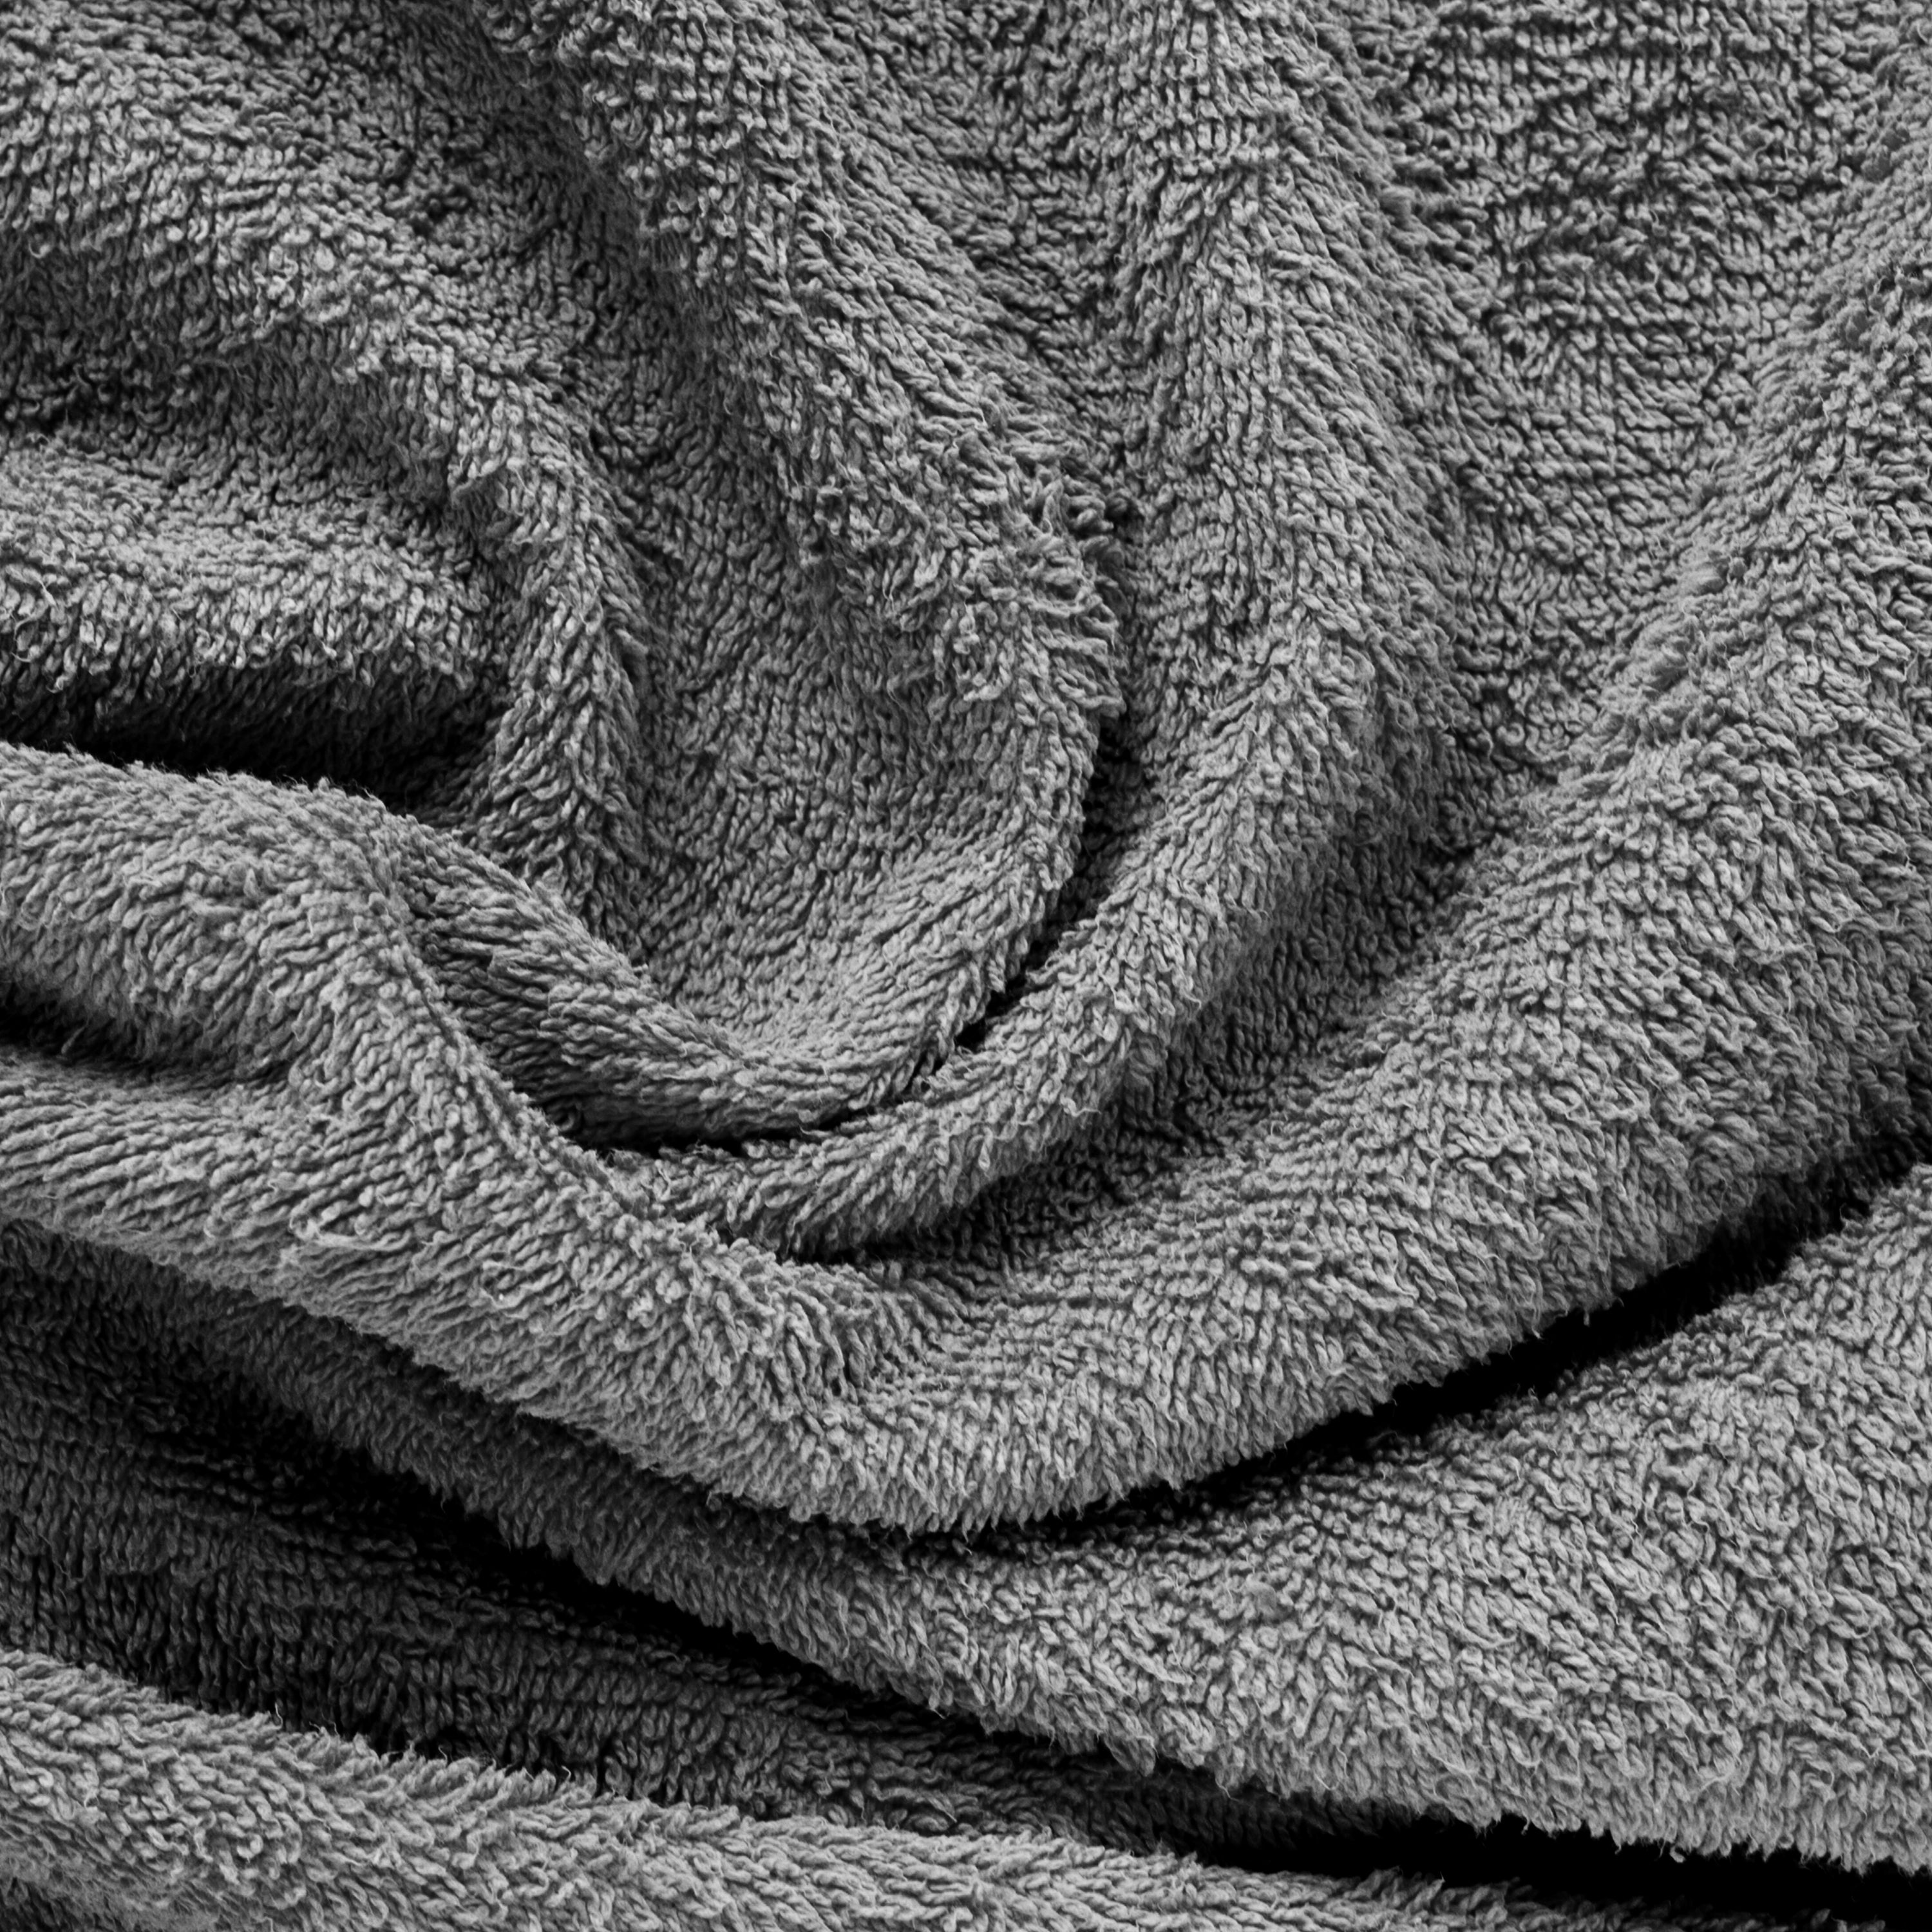 Aquacado 68 x 136 cm Bath Towel Set of 2 White & Charcoal Grey